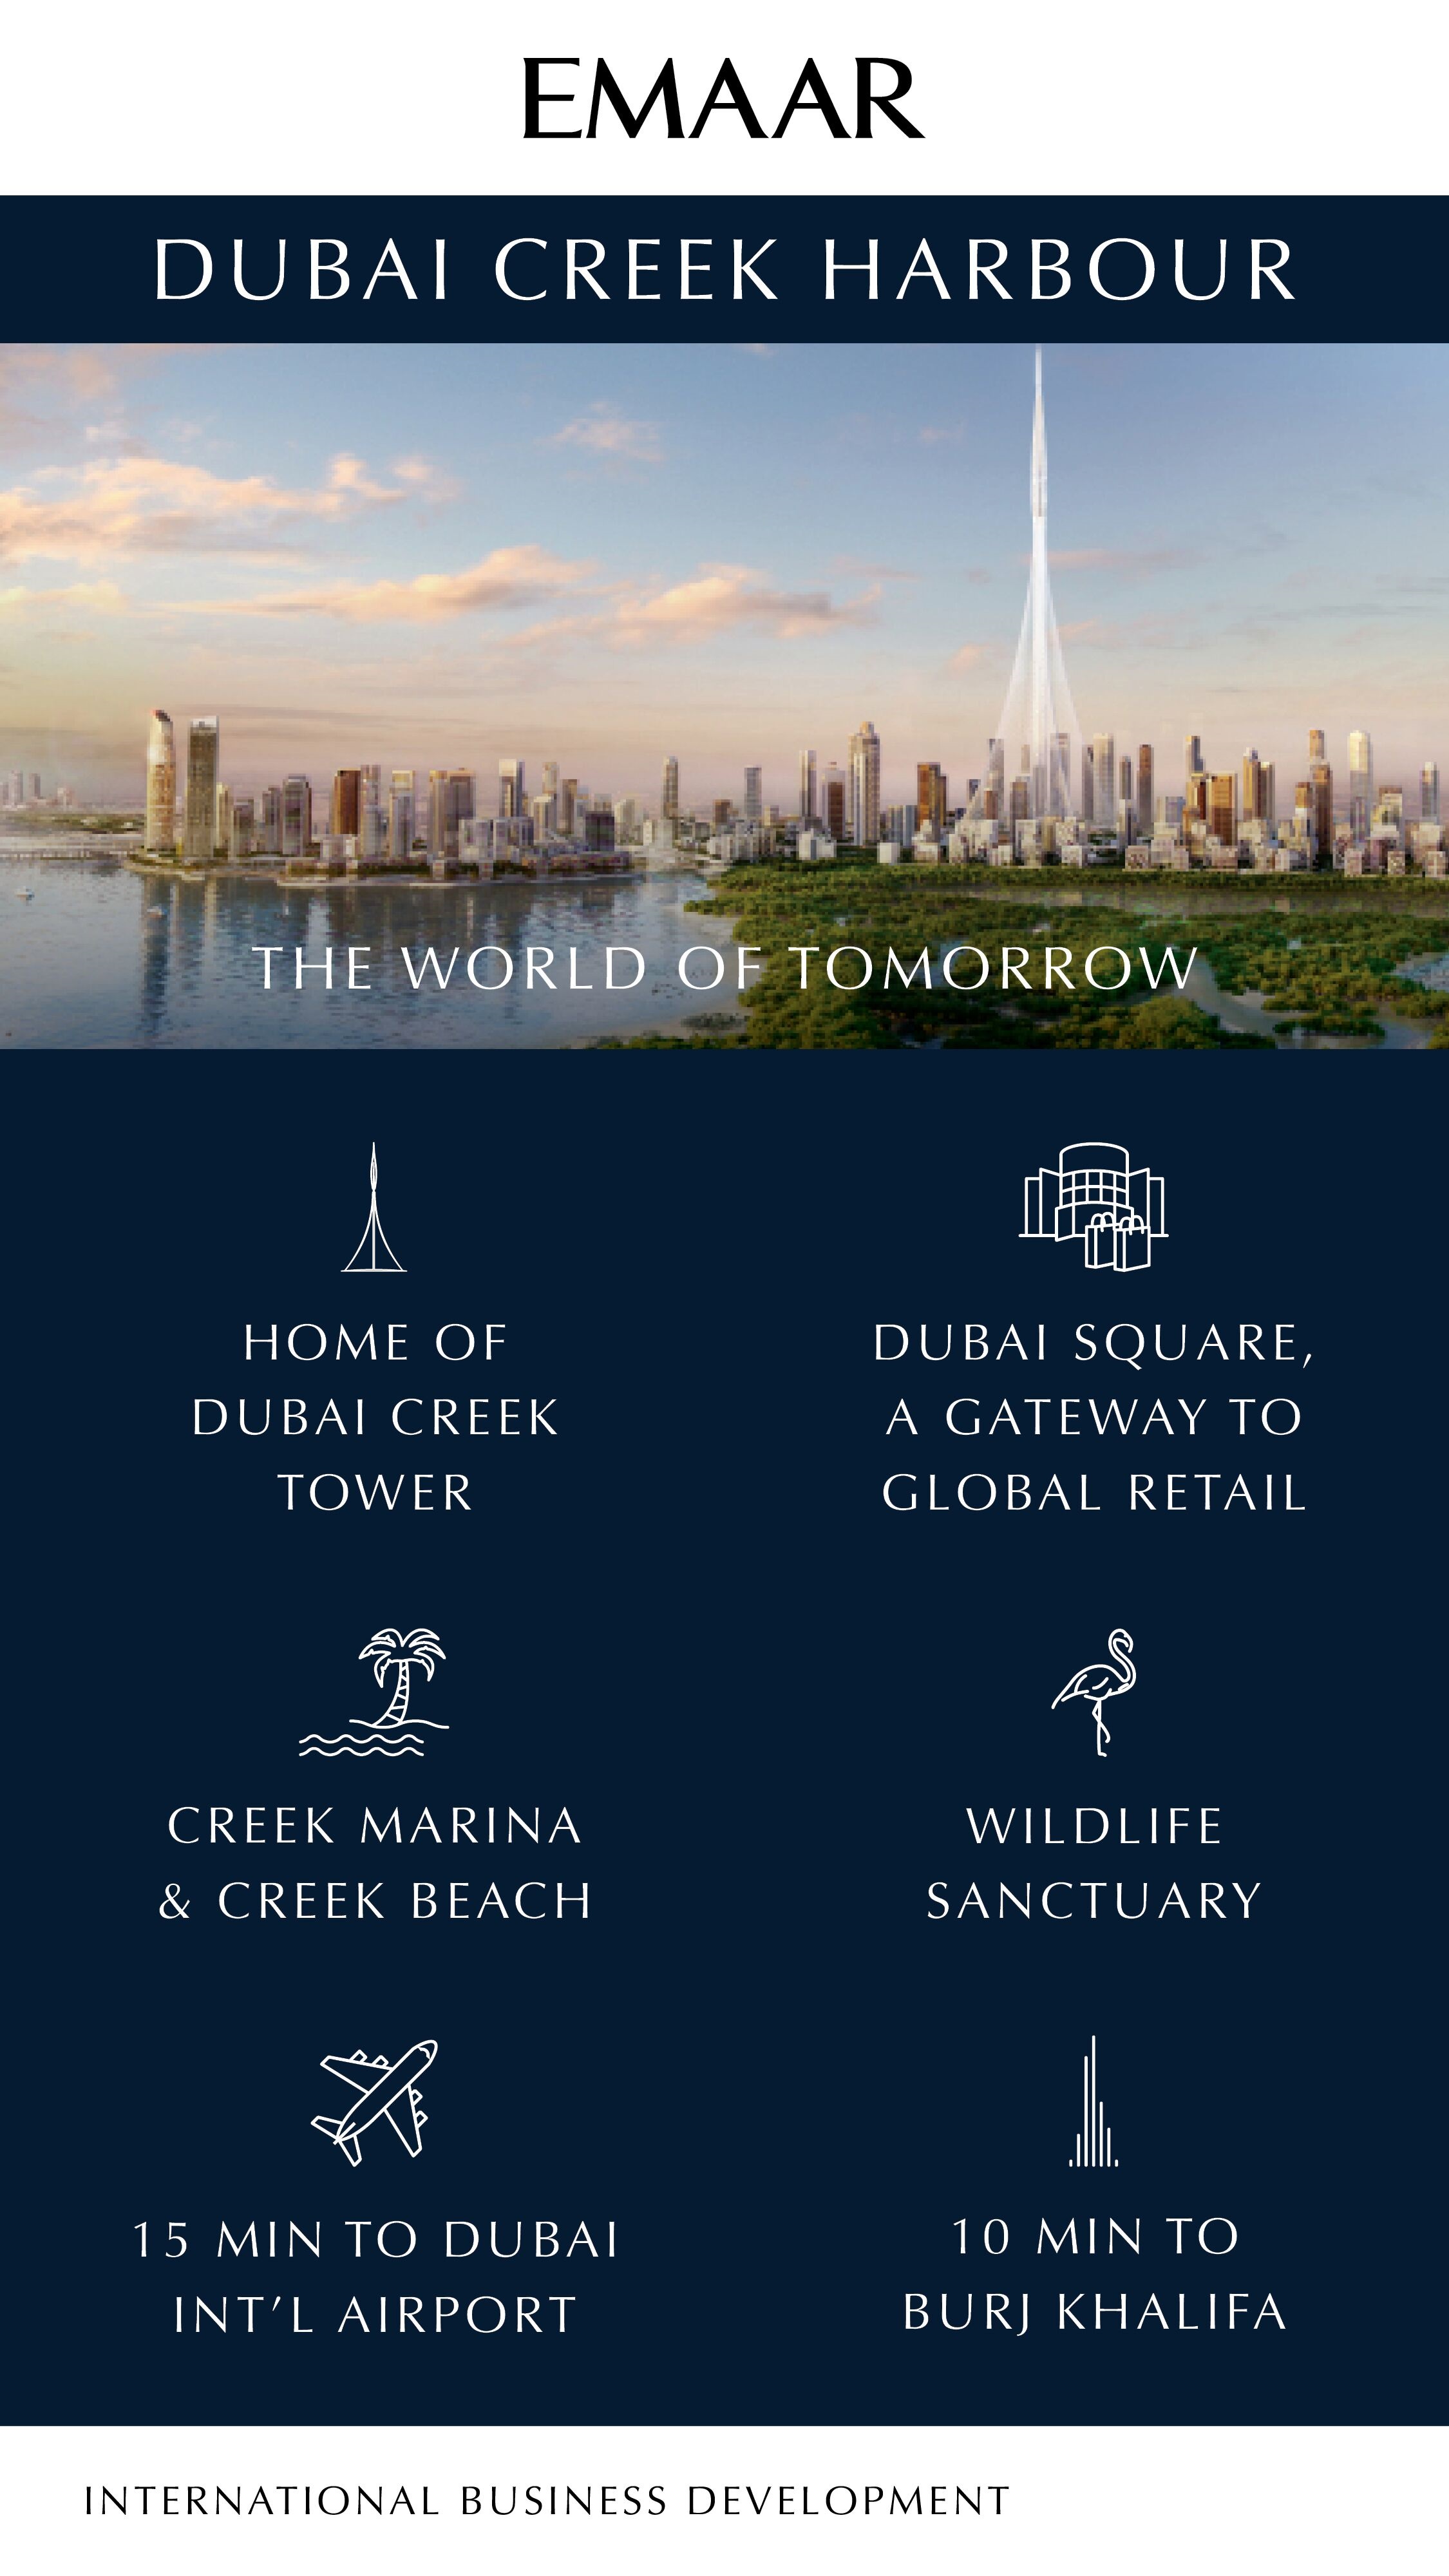 Book an Inimitable Haven at Emaar Dubai Creek Harbour in Dubai Update